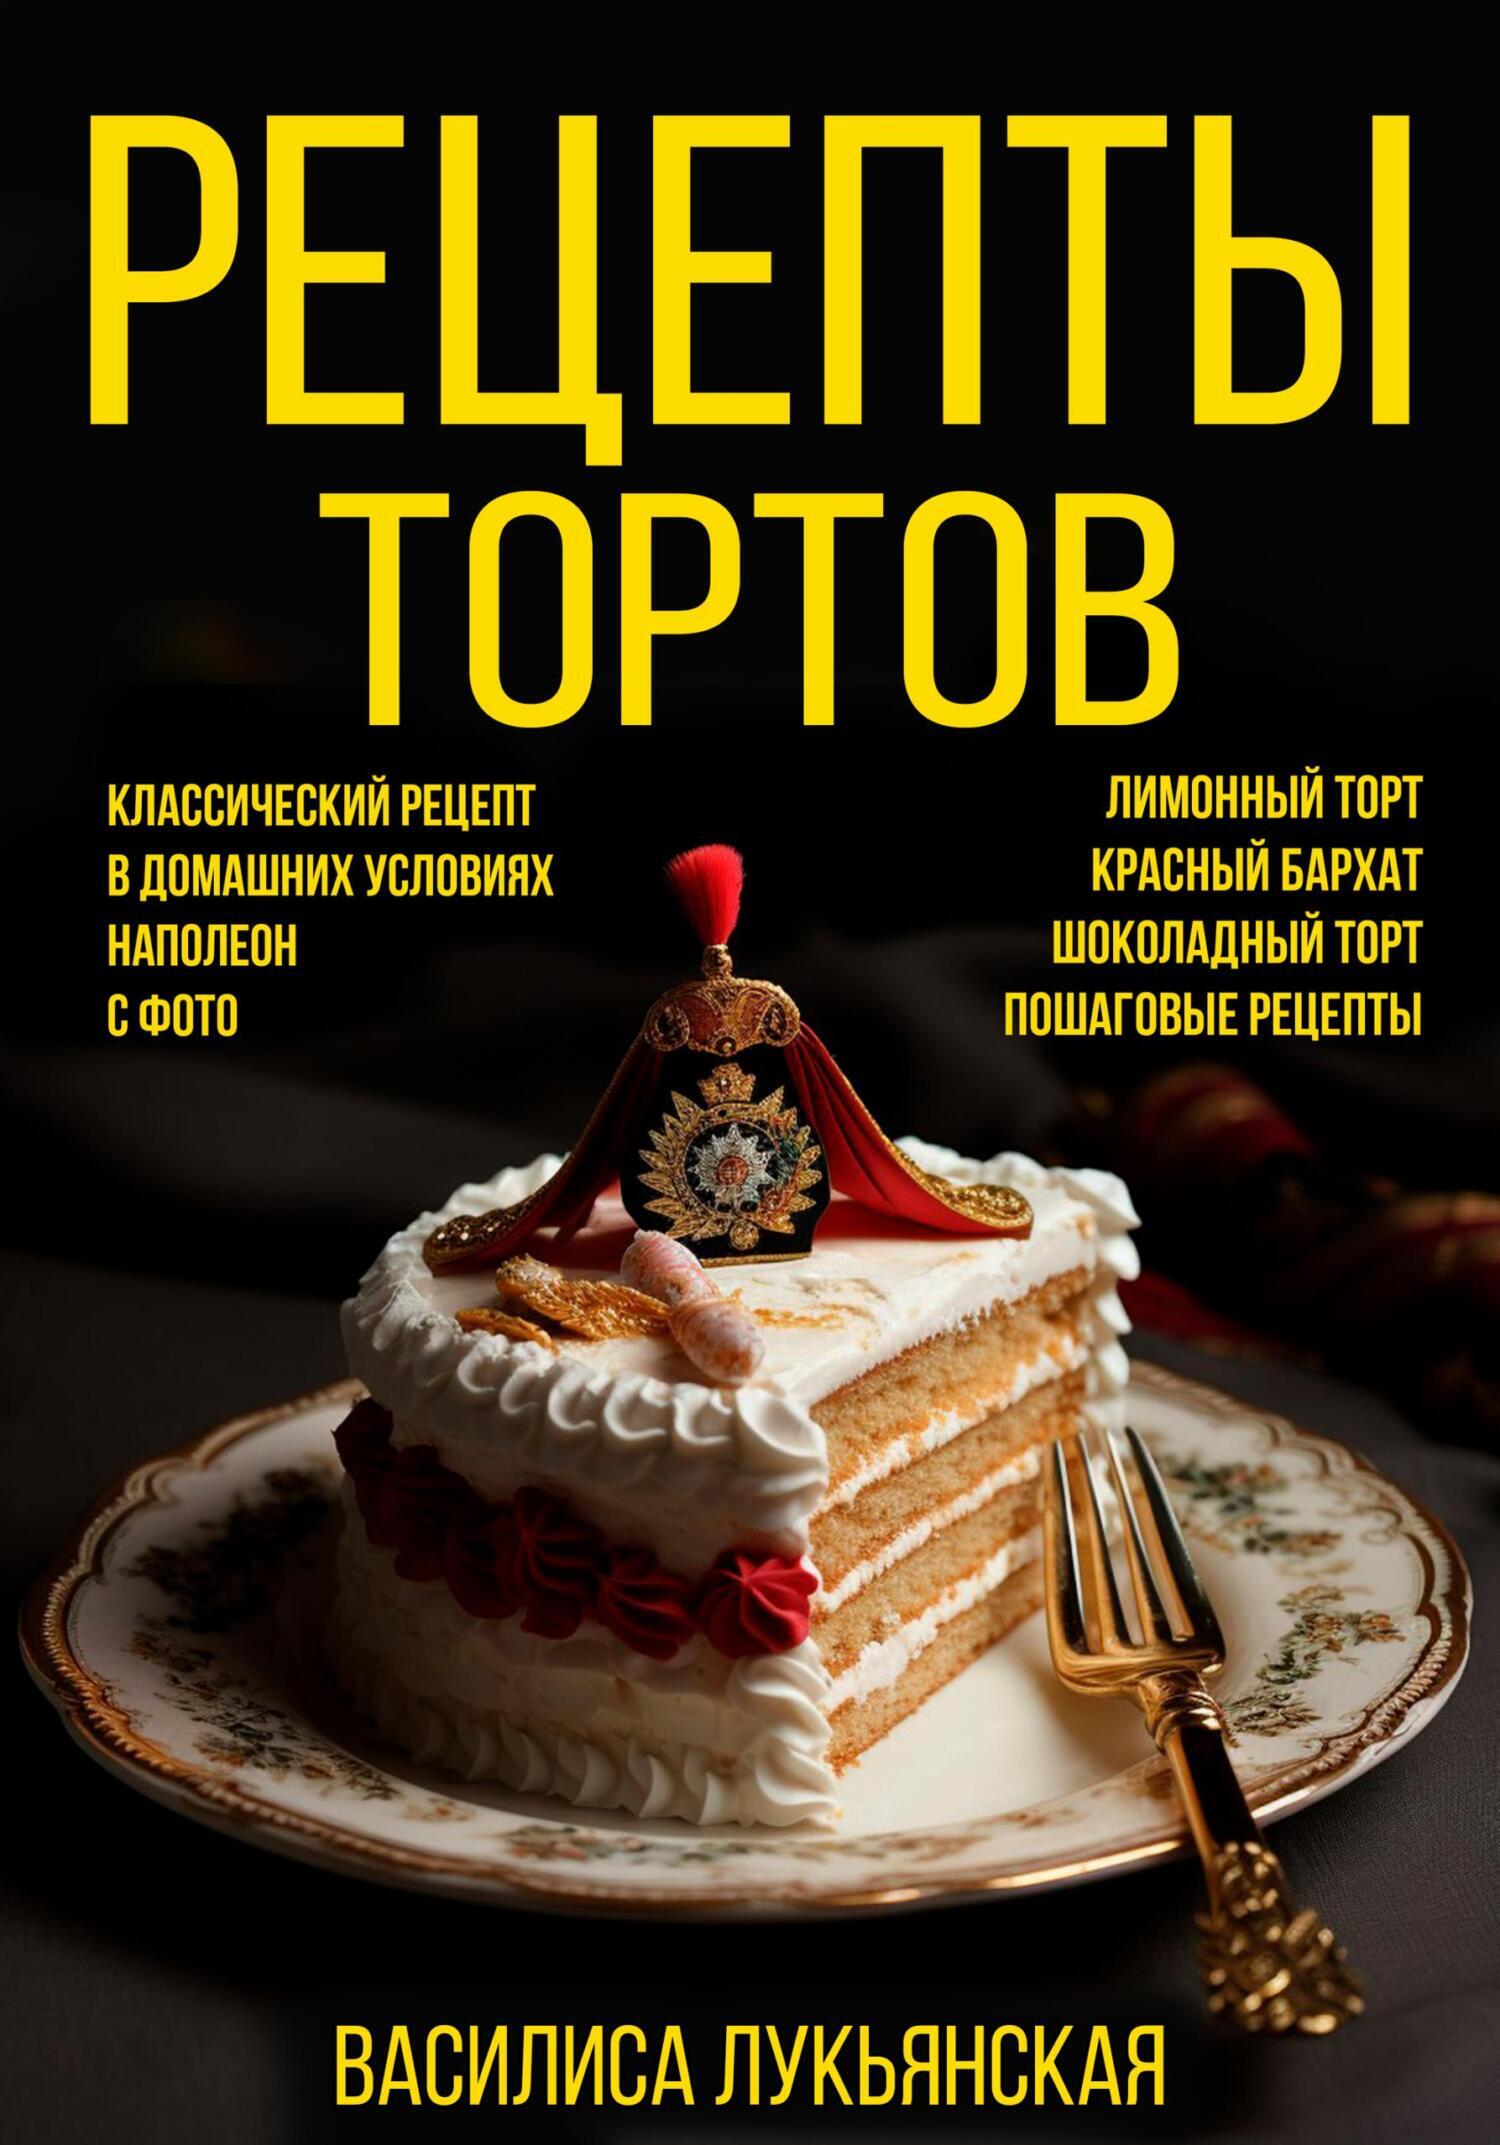 Торт «Наполеон» с малиной